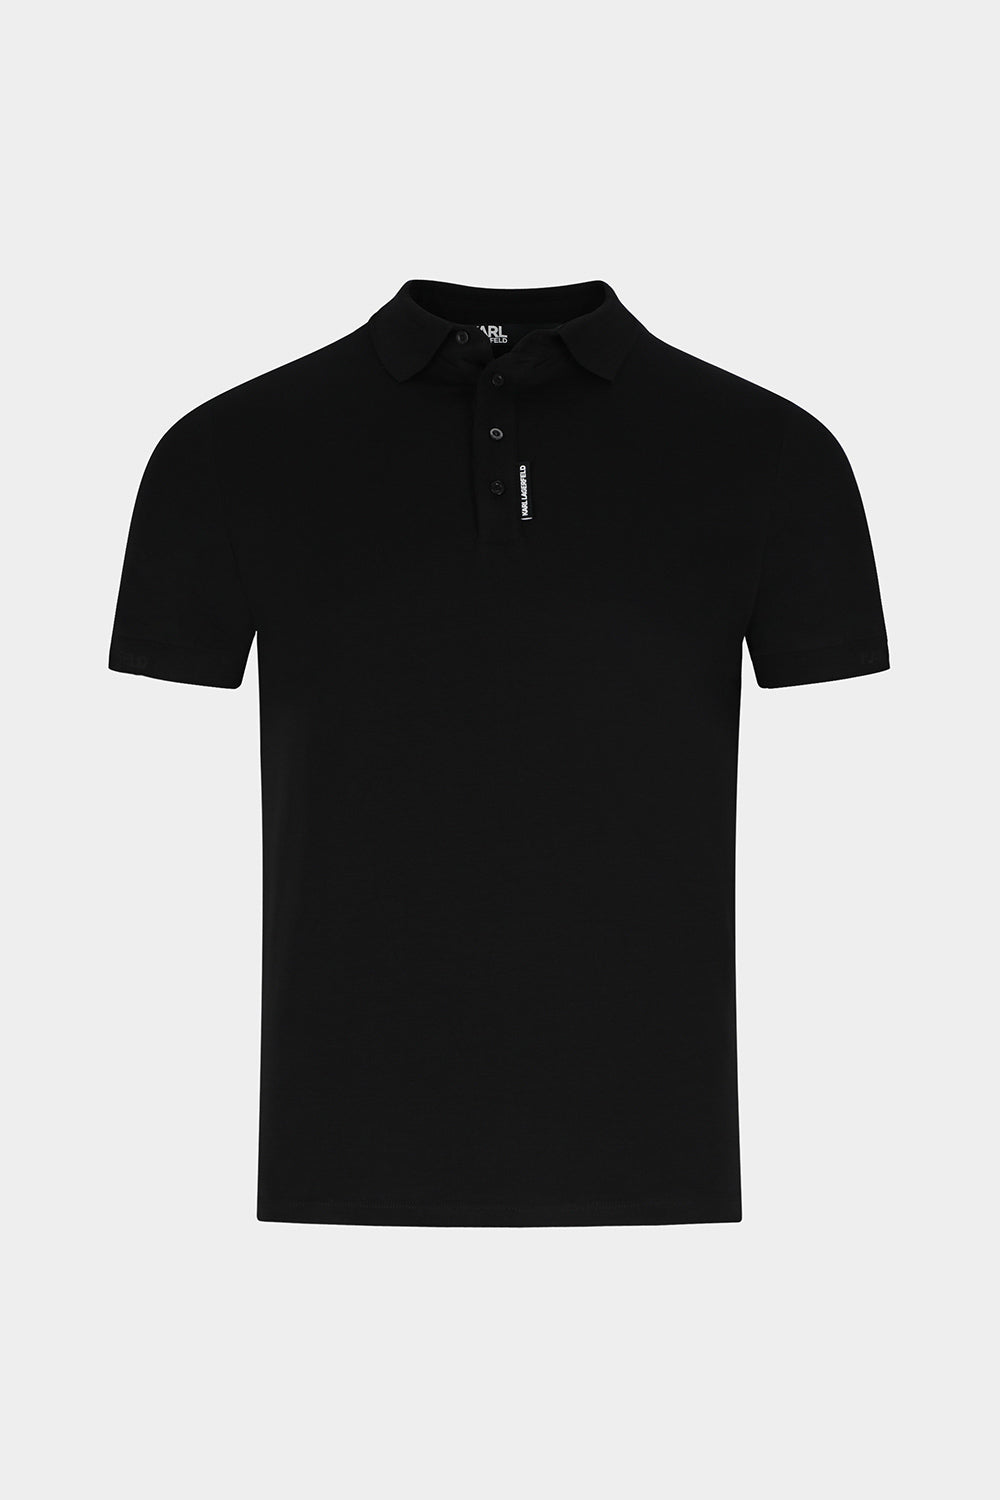 חולצה לגברים בצבע שחור KARL LAGERFELD KARL LAGERFELD Vendome online | ונדום .